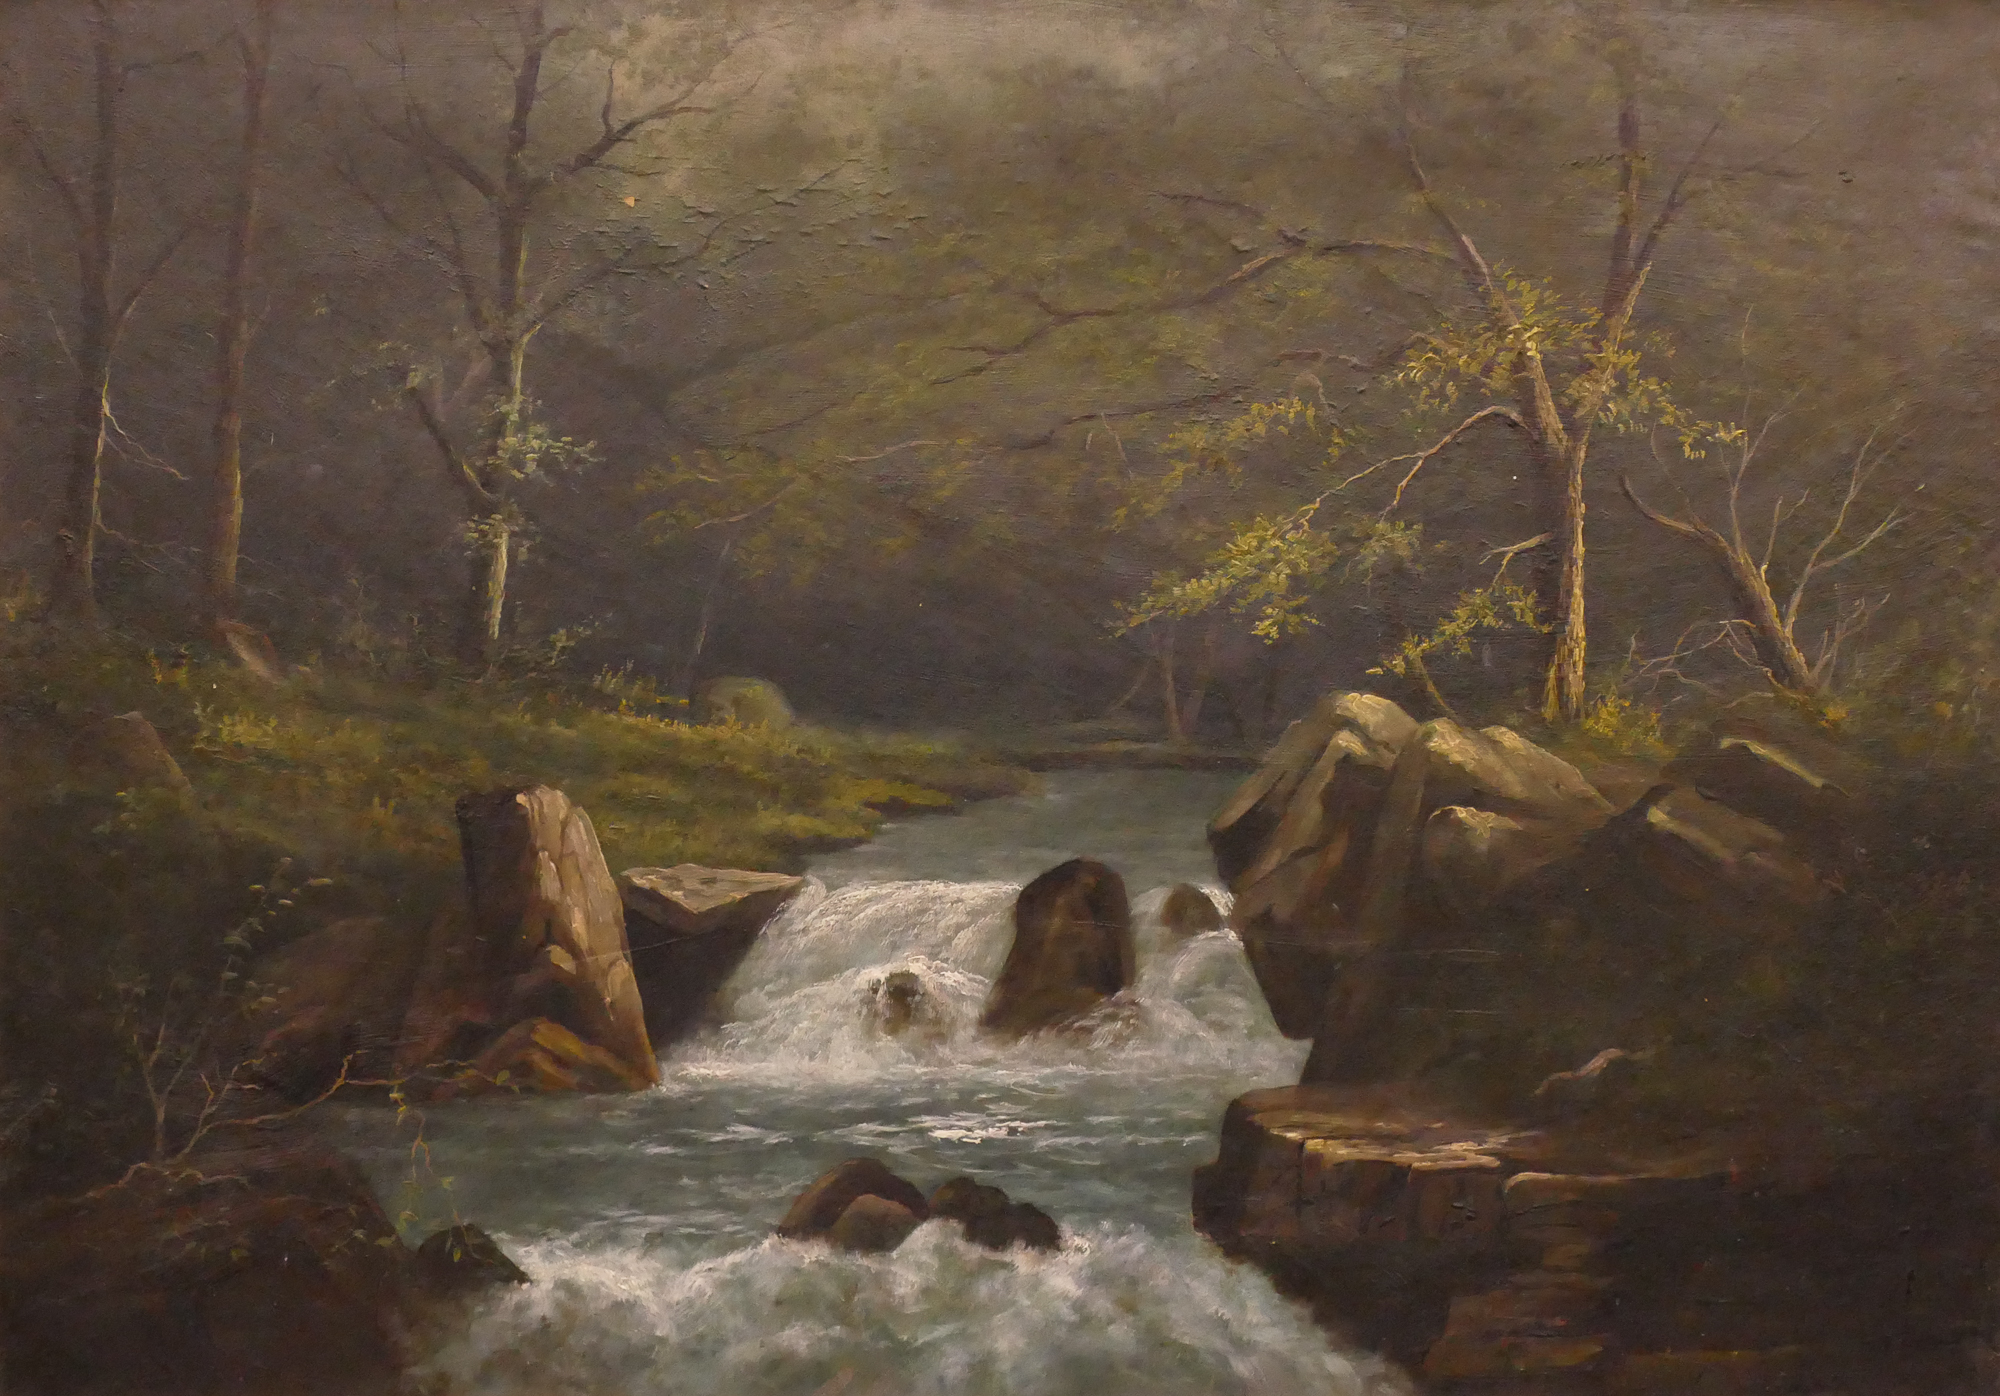 Antique River Landscape Oil Painting 2d9e55